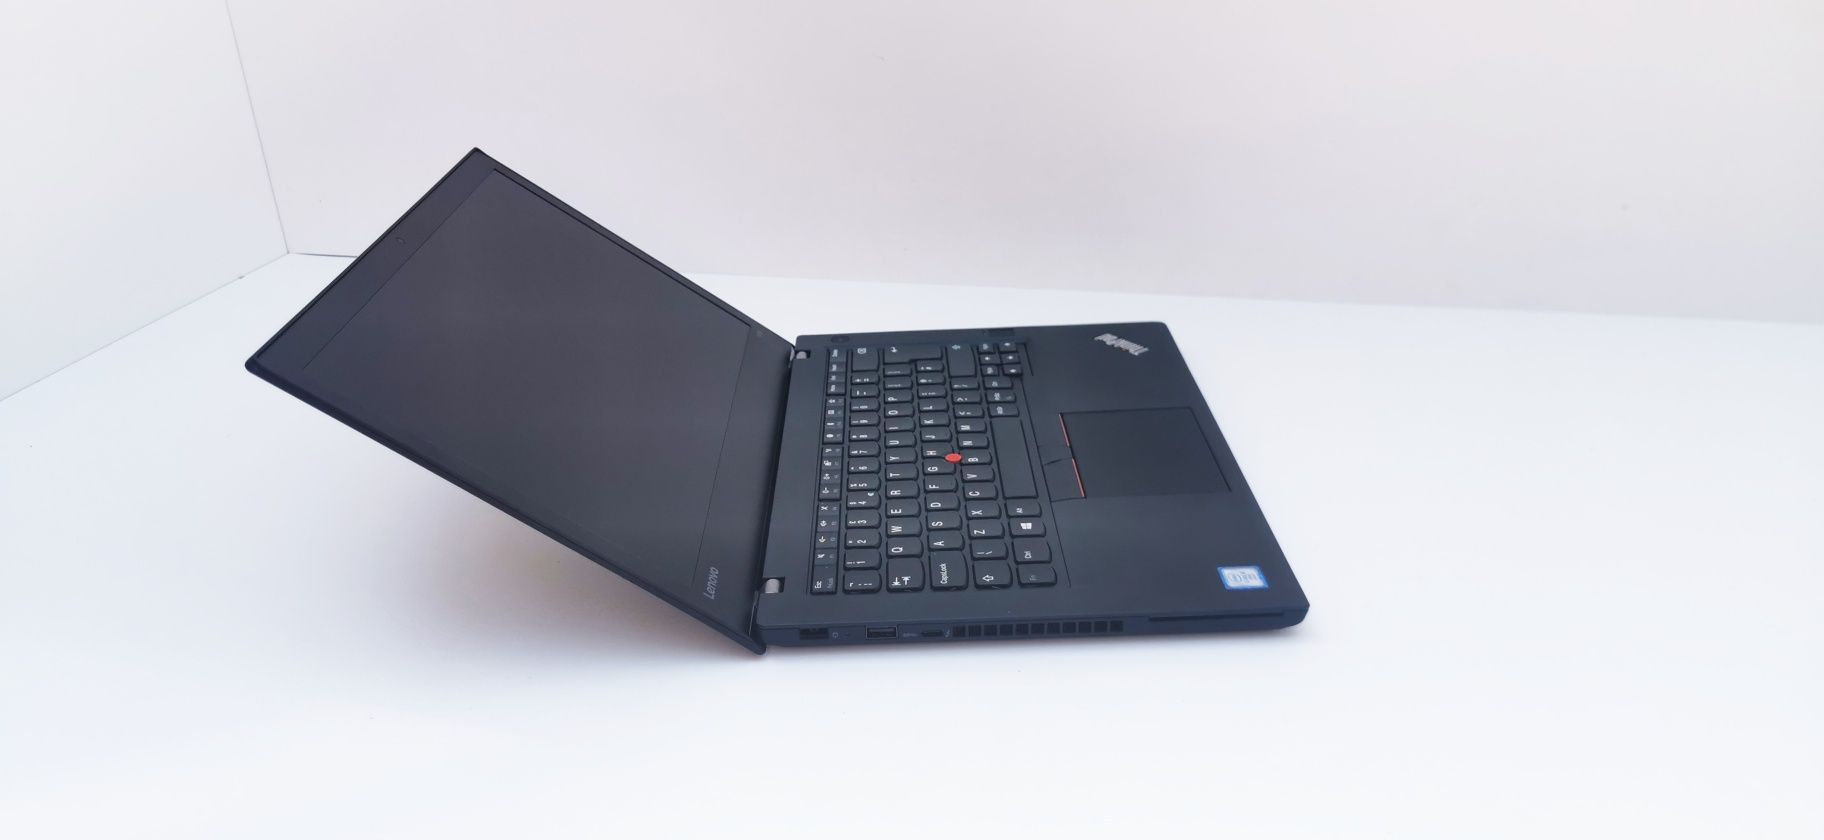 NOU Lenovo ThinkPad T470 i5 6300U 256 / 512 GB SSD 8 / 12 / 16 GB RAM